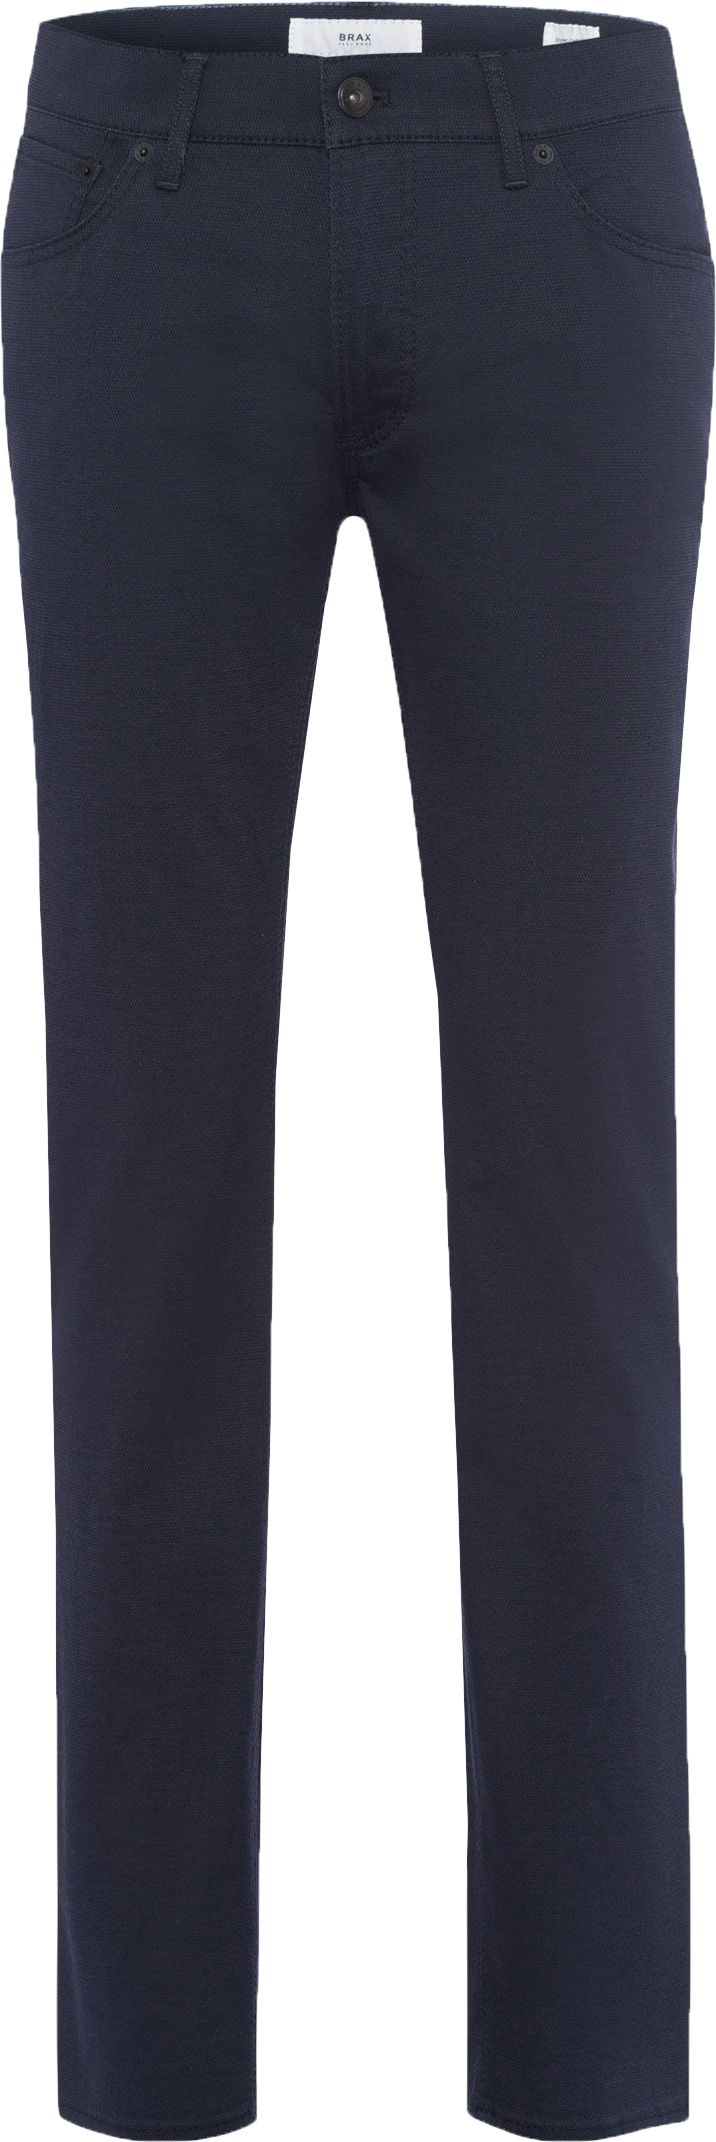 Brax Pantalon Chuck Navy Bleu foncé Bleu taille W 31